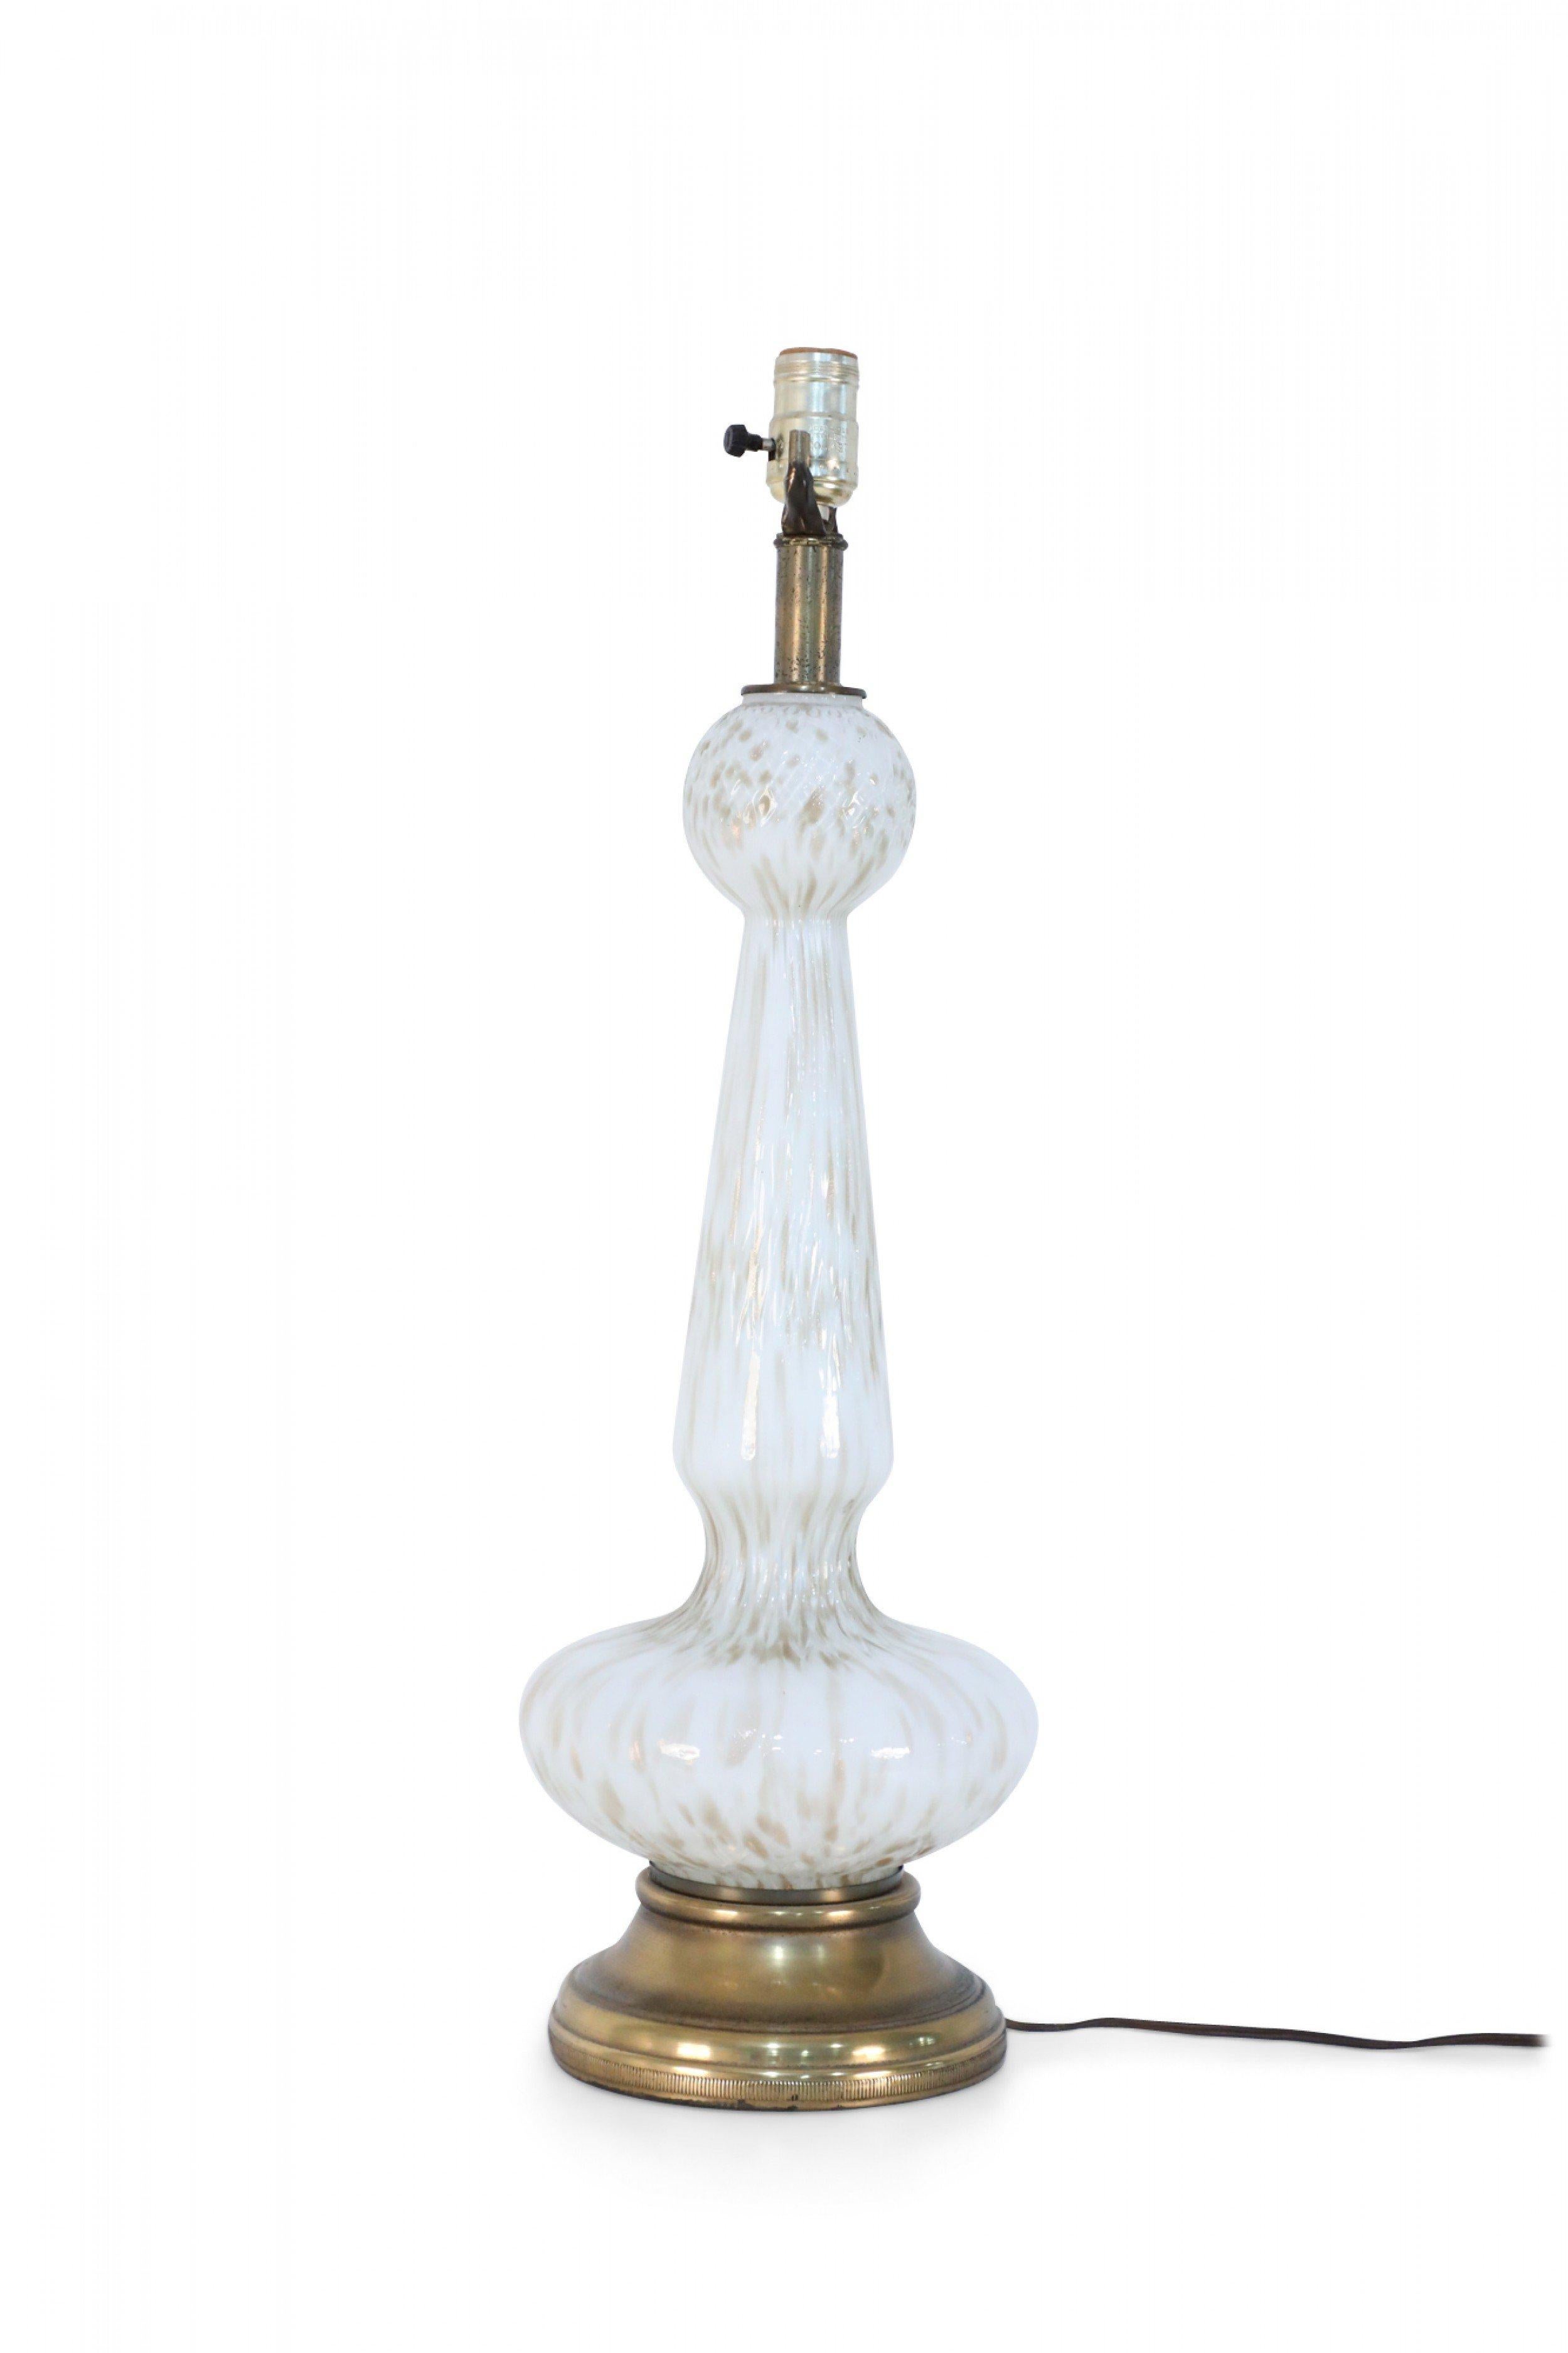 Lampe de table italienne du milieu du siècle, de style vénitien, en verre blanc avec des traces de poussière d'or sur une base circulaire en laiton avec des fixations en laiton.
    